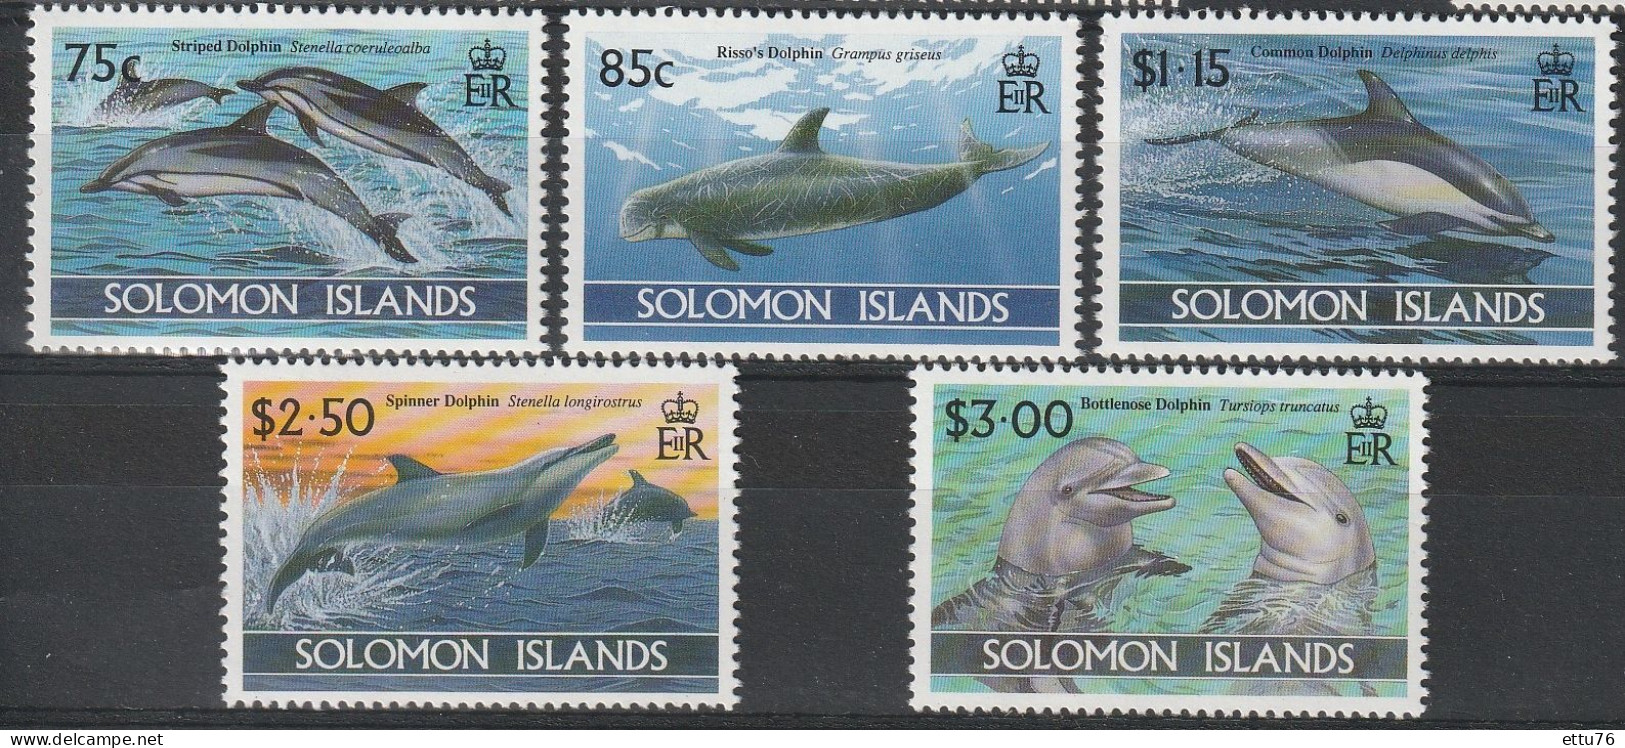 Solomon Islands 1994  Dolphins  Set  MNH - Delfine